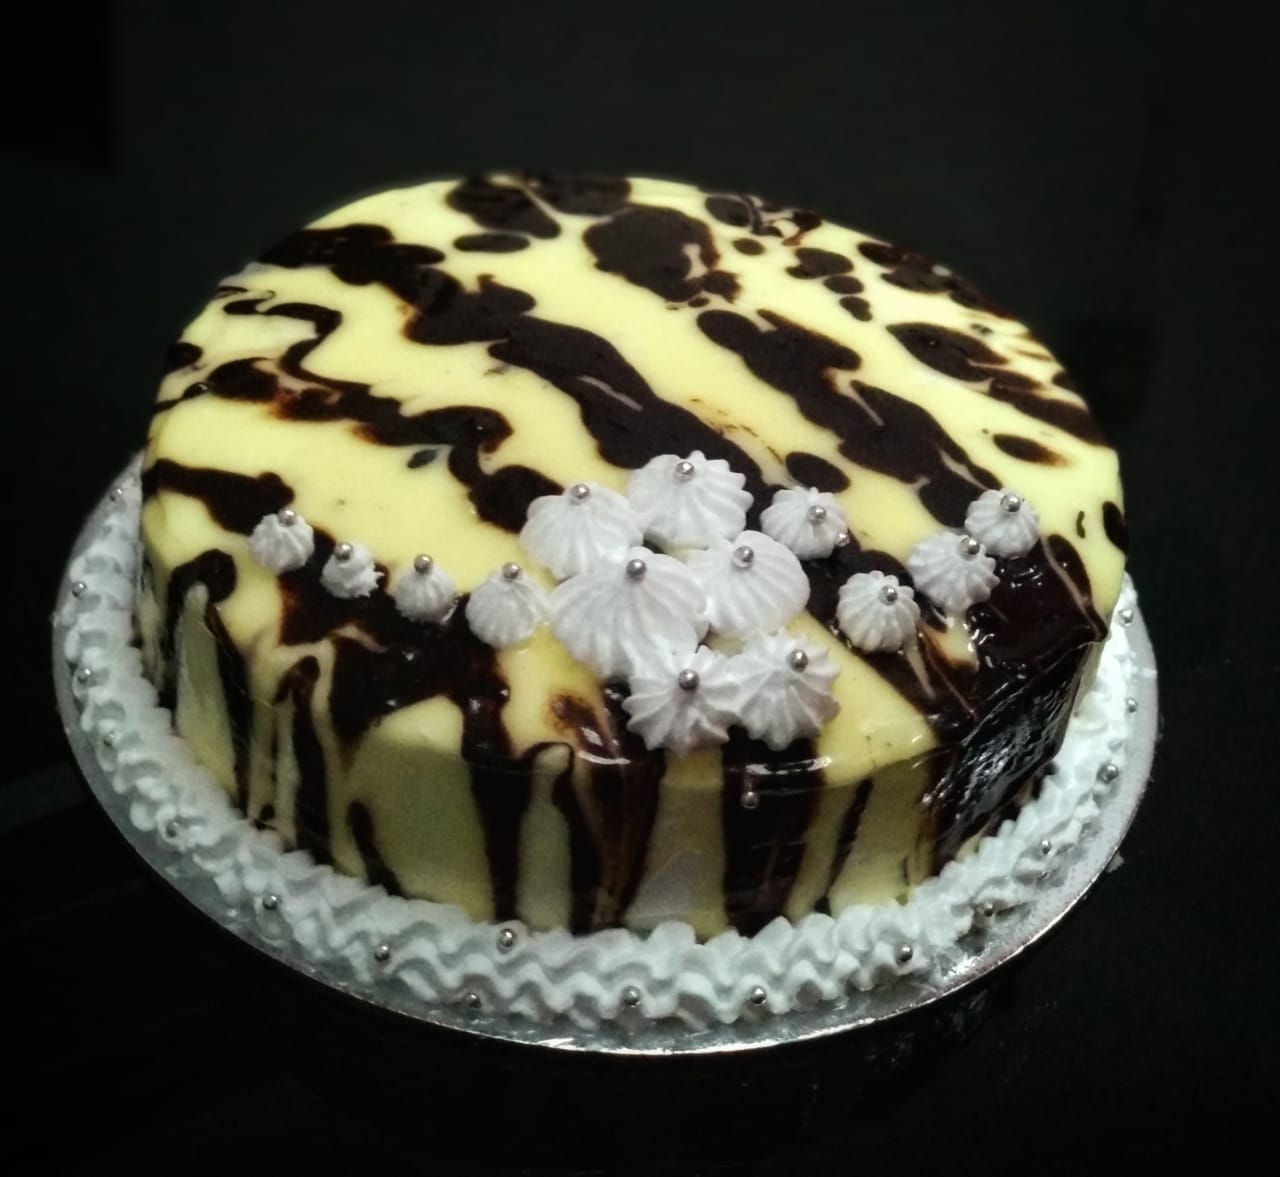 Taste_n_fresh - Vancho cake @ taste n fresh | Facebook